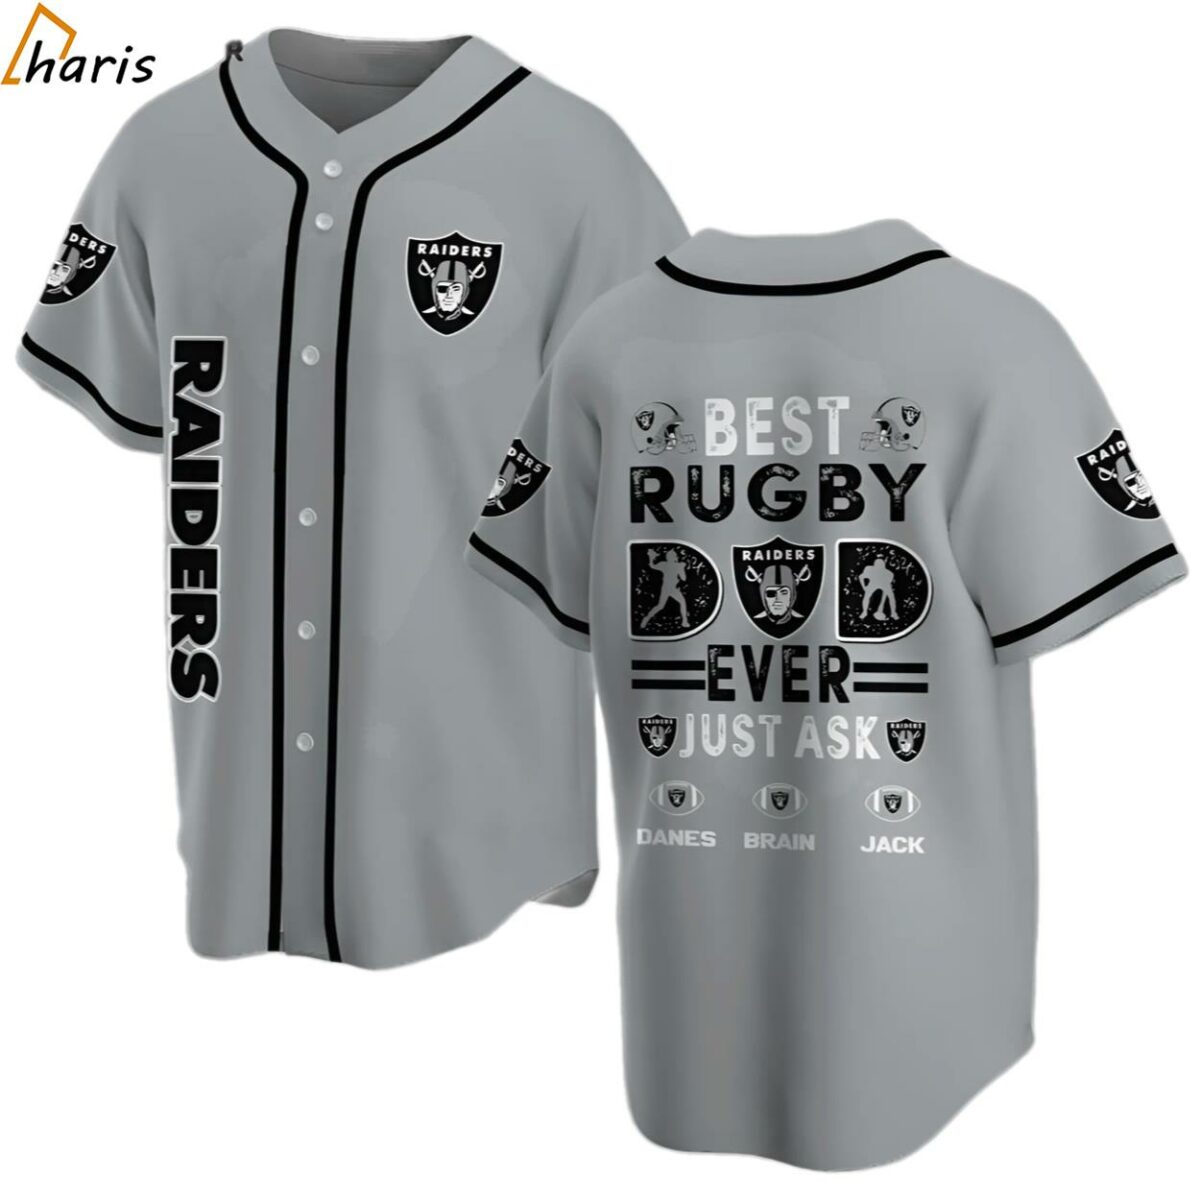 Oakland Raiders Fan Apparel Baseball Jersey jersey jersey